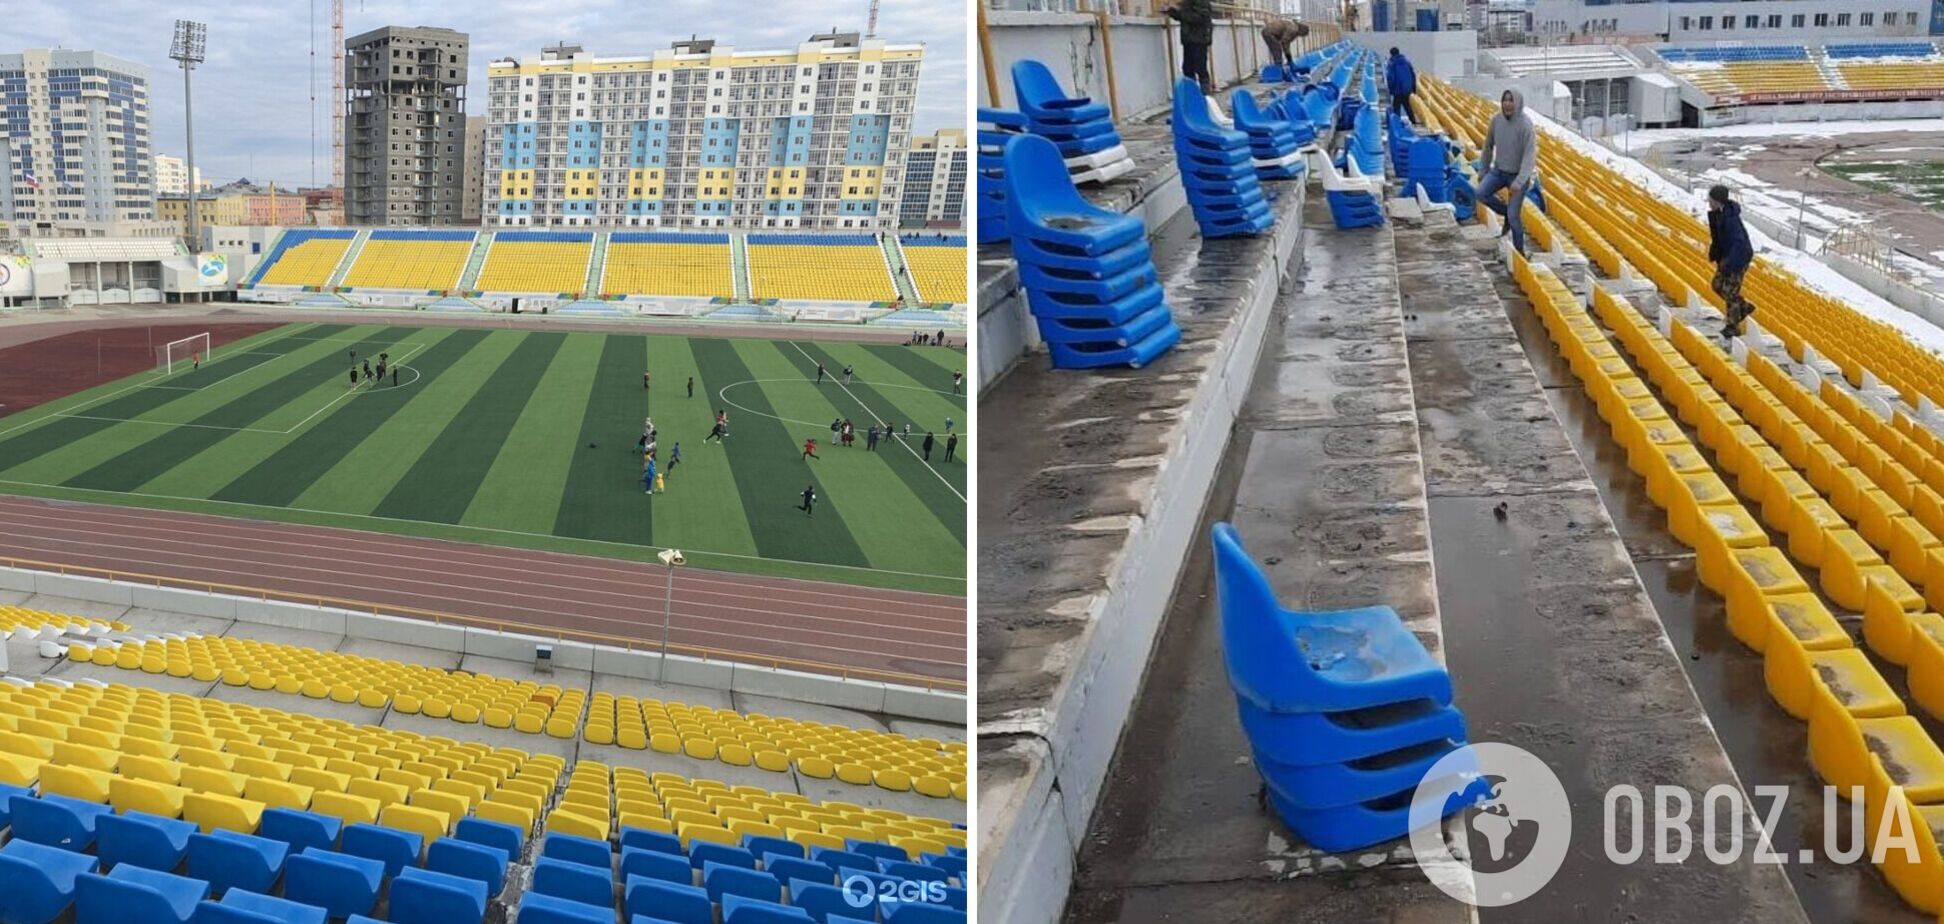 Боятся всего украинского: в России на стадионе демонтируют желто-синие трибуны. Фотофакт